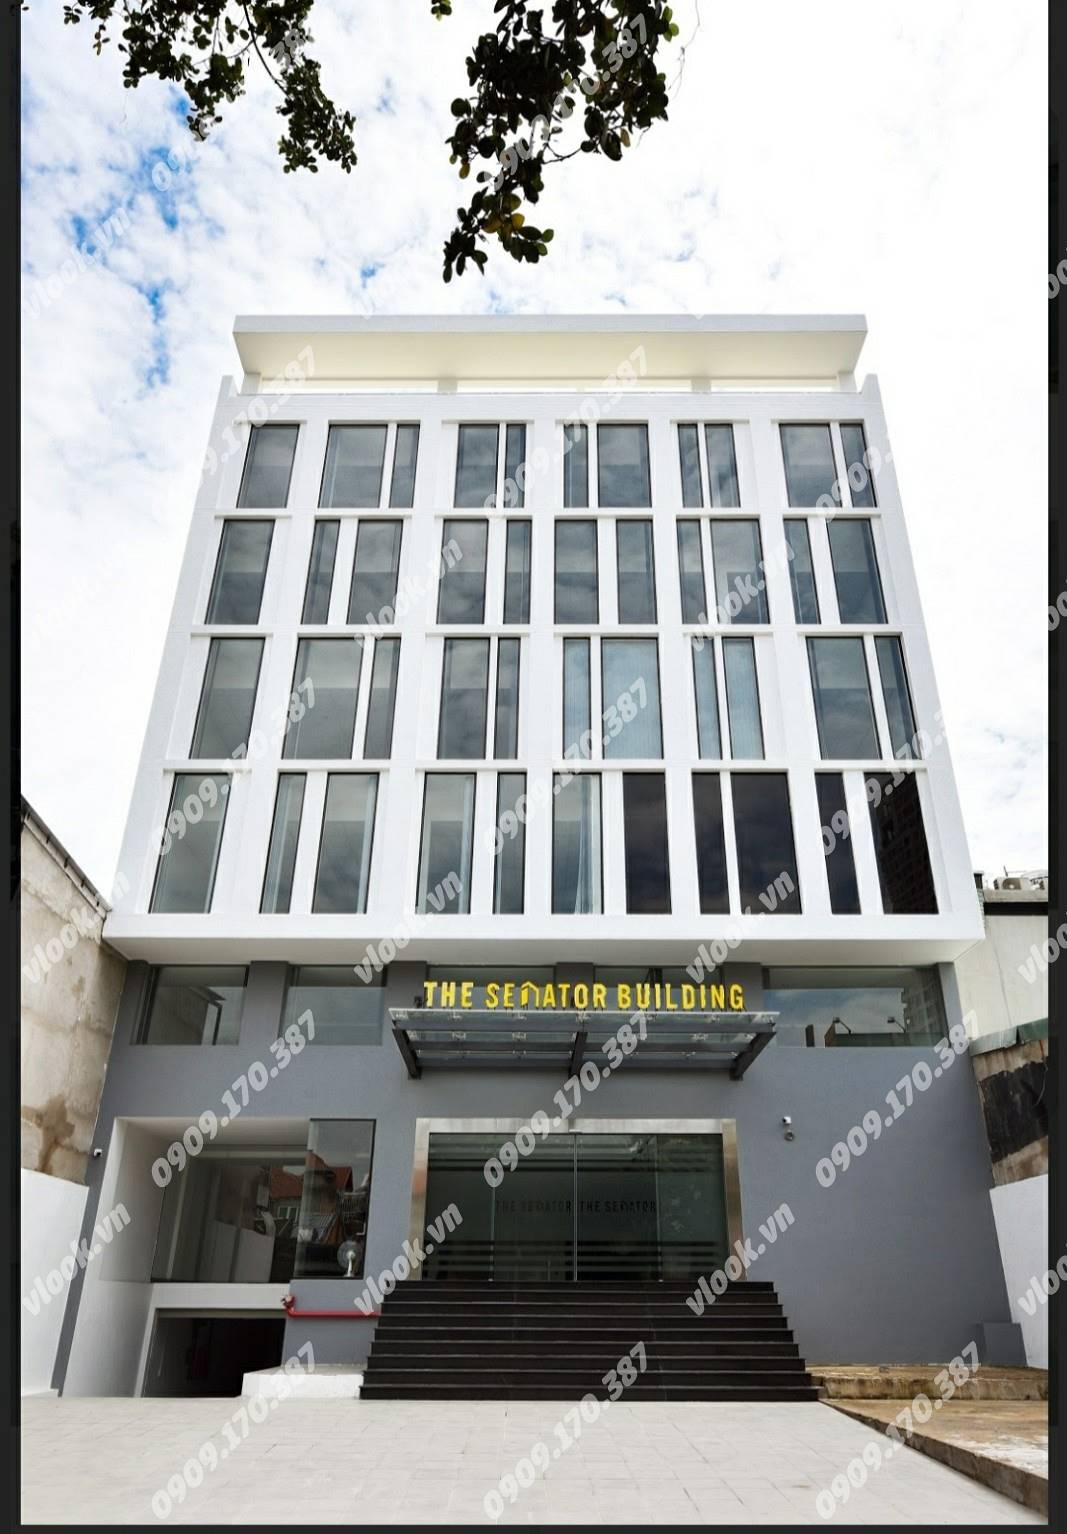 Cao ốc cho thuê văn phòng The Senator Building, Xuân Thủy, Quận 2, TPHCM - vlook.vn